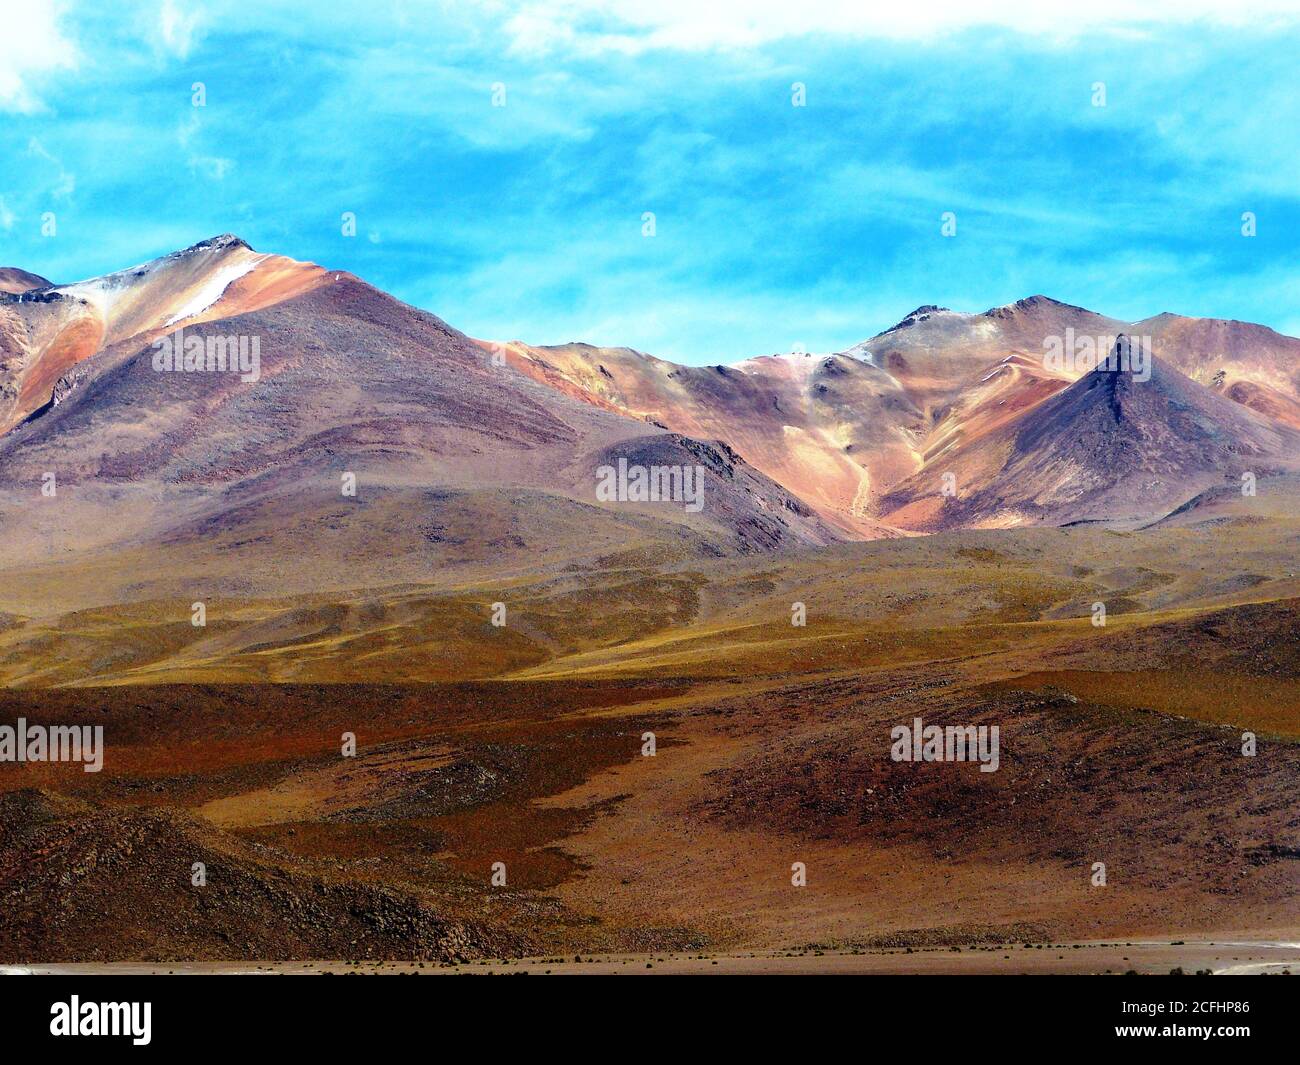 Salvador Dali Wüste Dali Tal ist extrem kargen Landschaft Tal von Potosi, Bolivien und wird von surrealen Landschaften geprägt. Farbig hell m Stockfoto